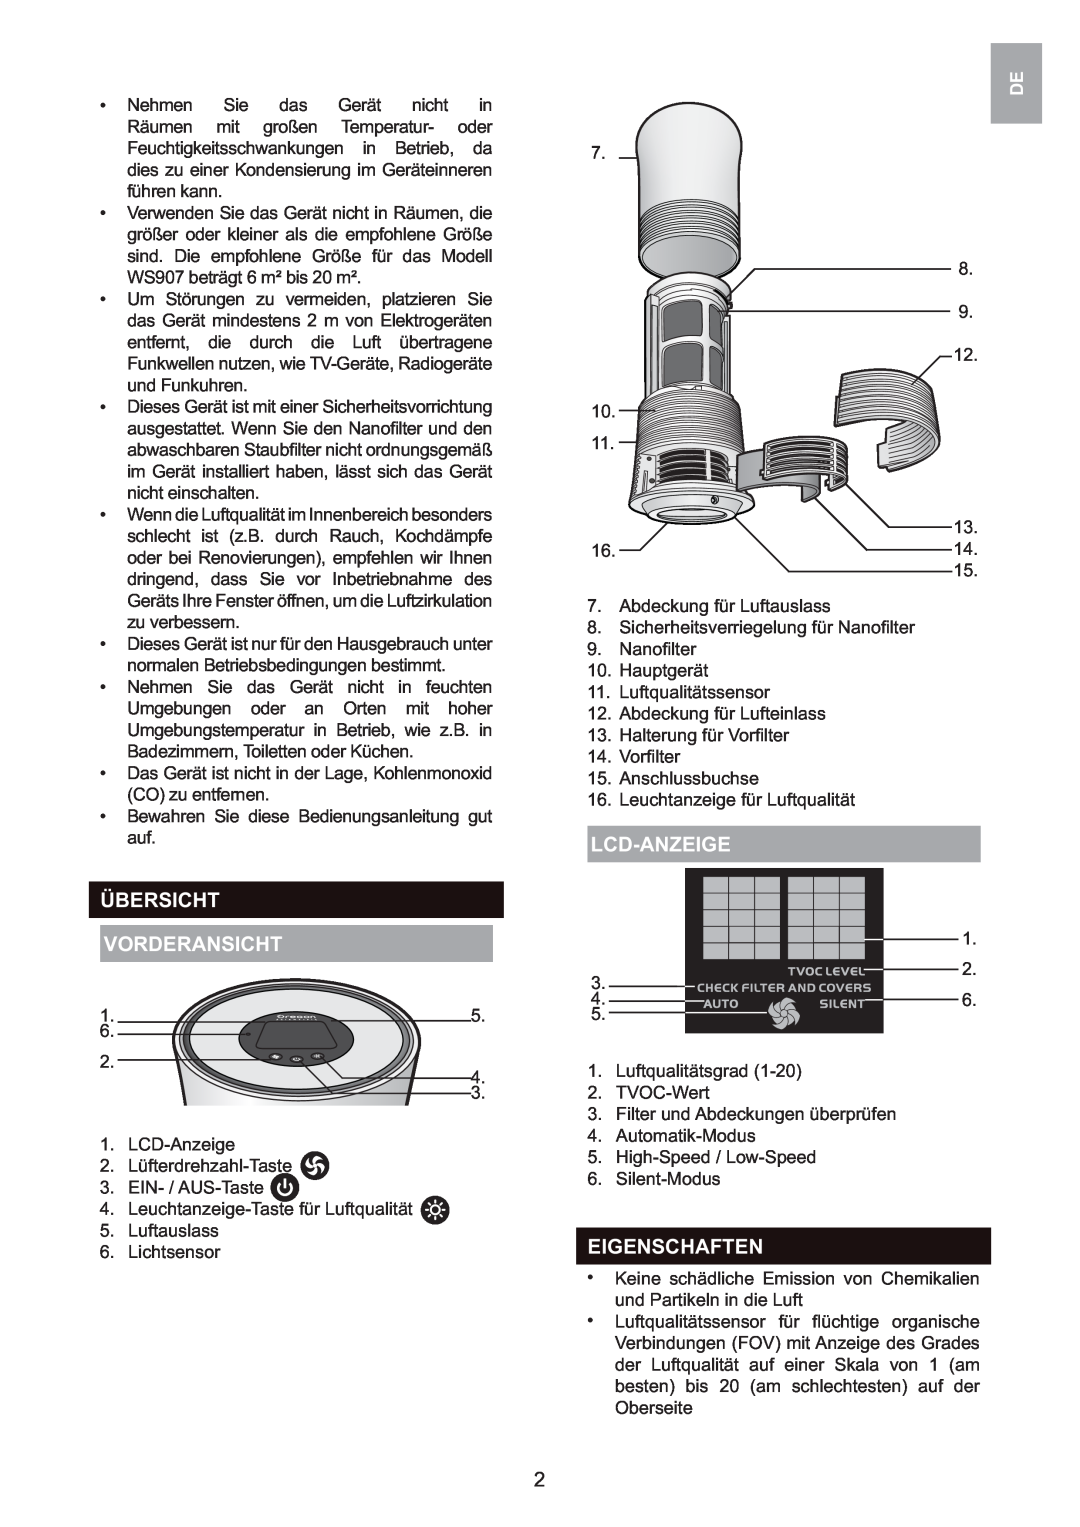 Oregon Scientific WS907 user manual Übersicht Vorderansicht, Lcd-Anzeige, Eigenschaften 